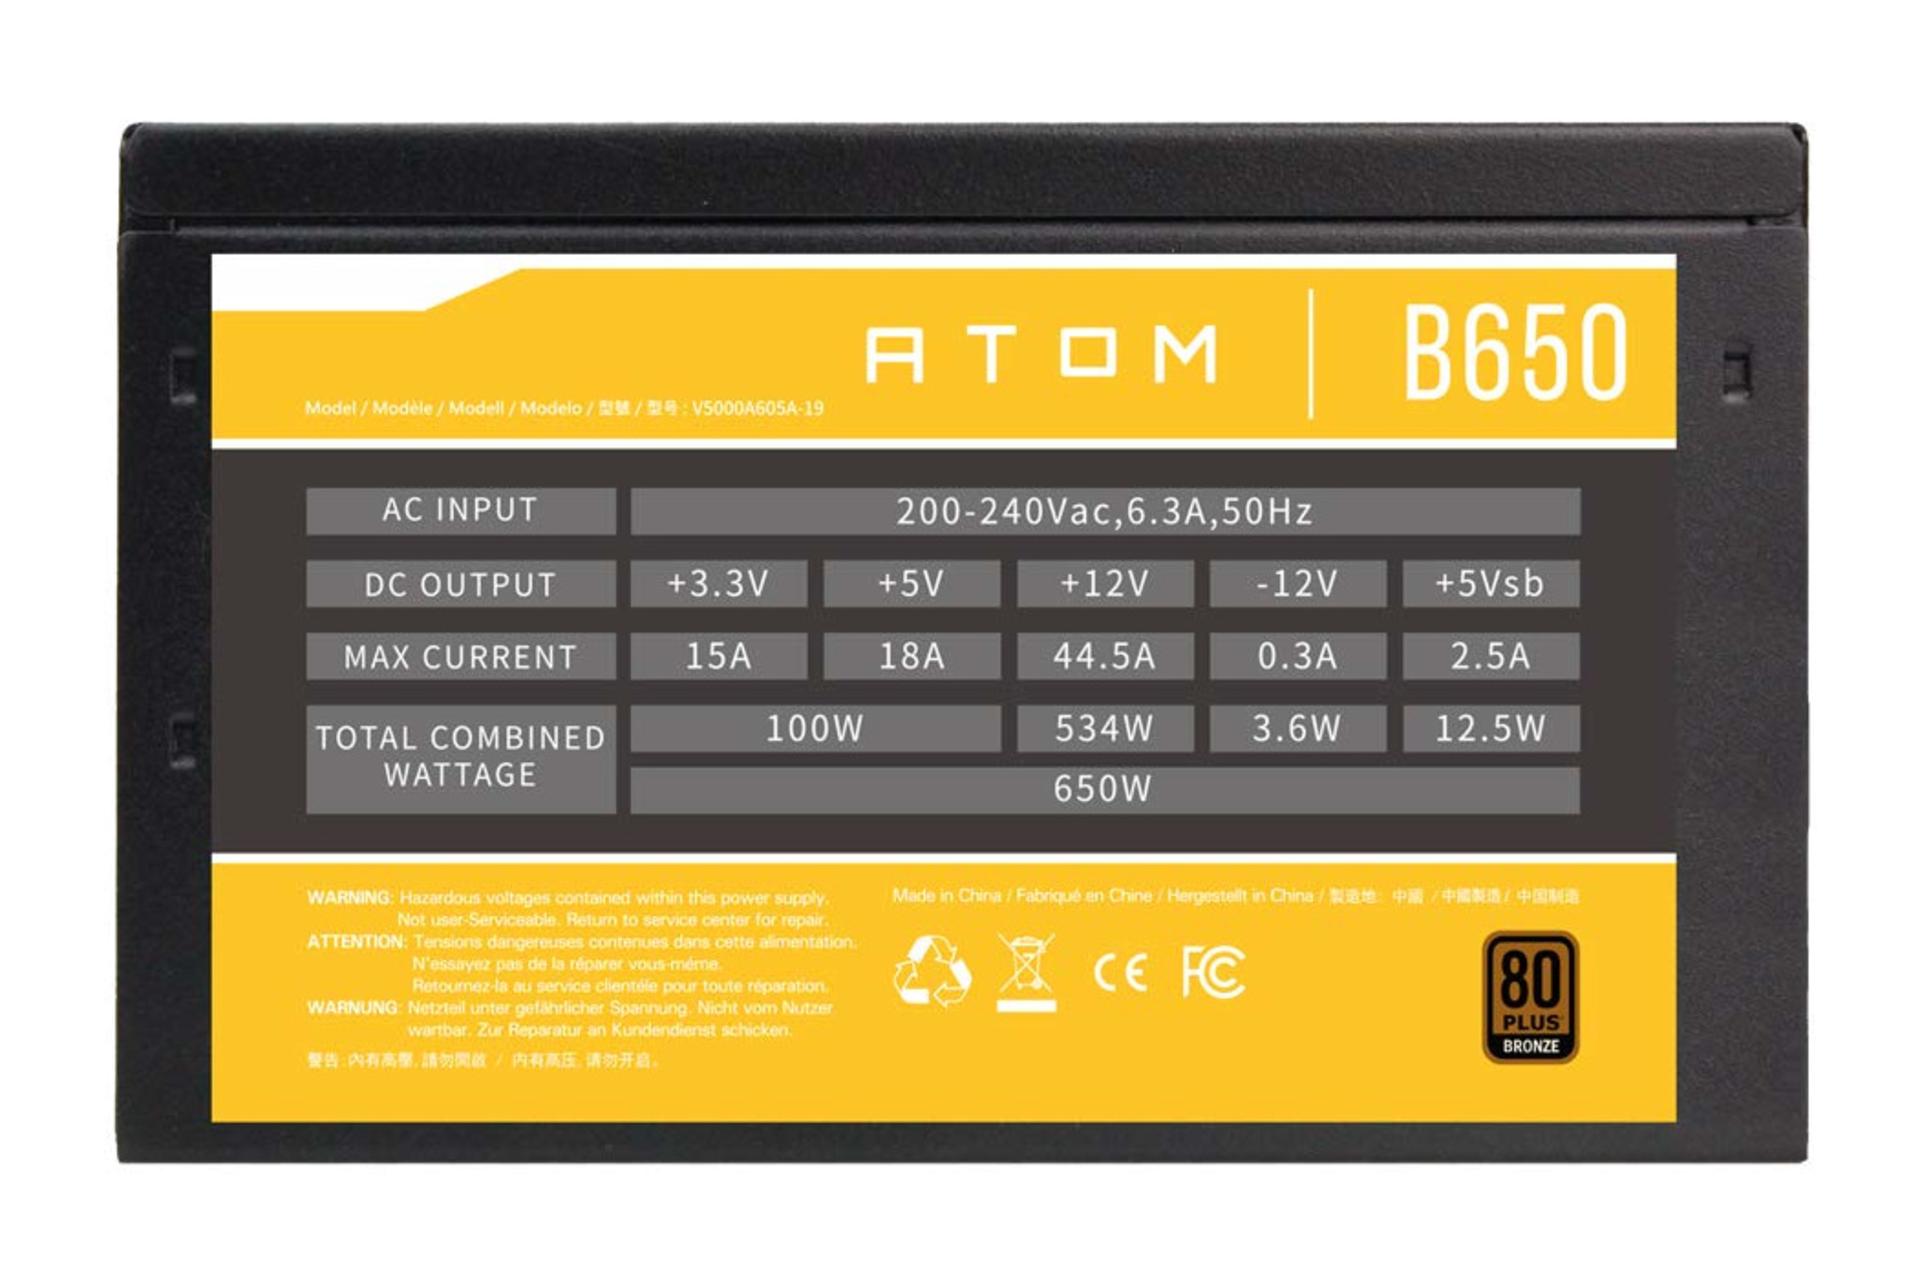 خروجی پاور کامپیوتر انتک ATOM B650 با توان 650 وات